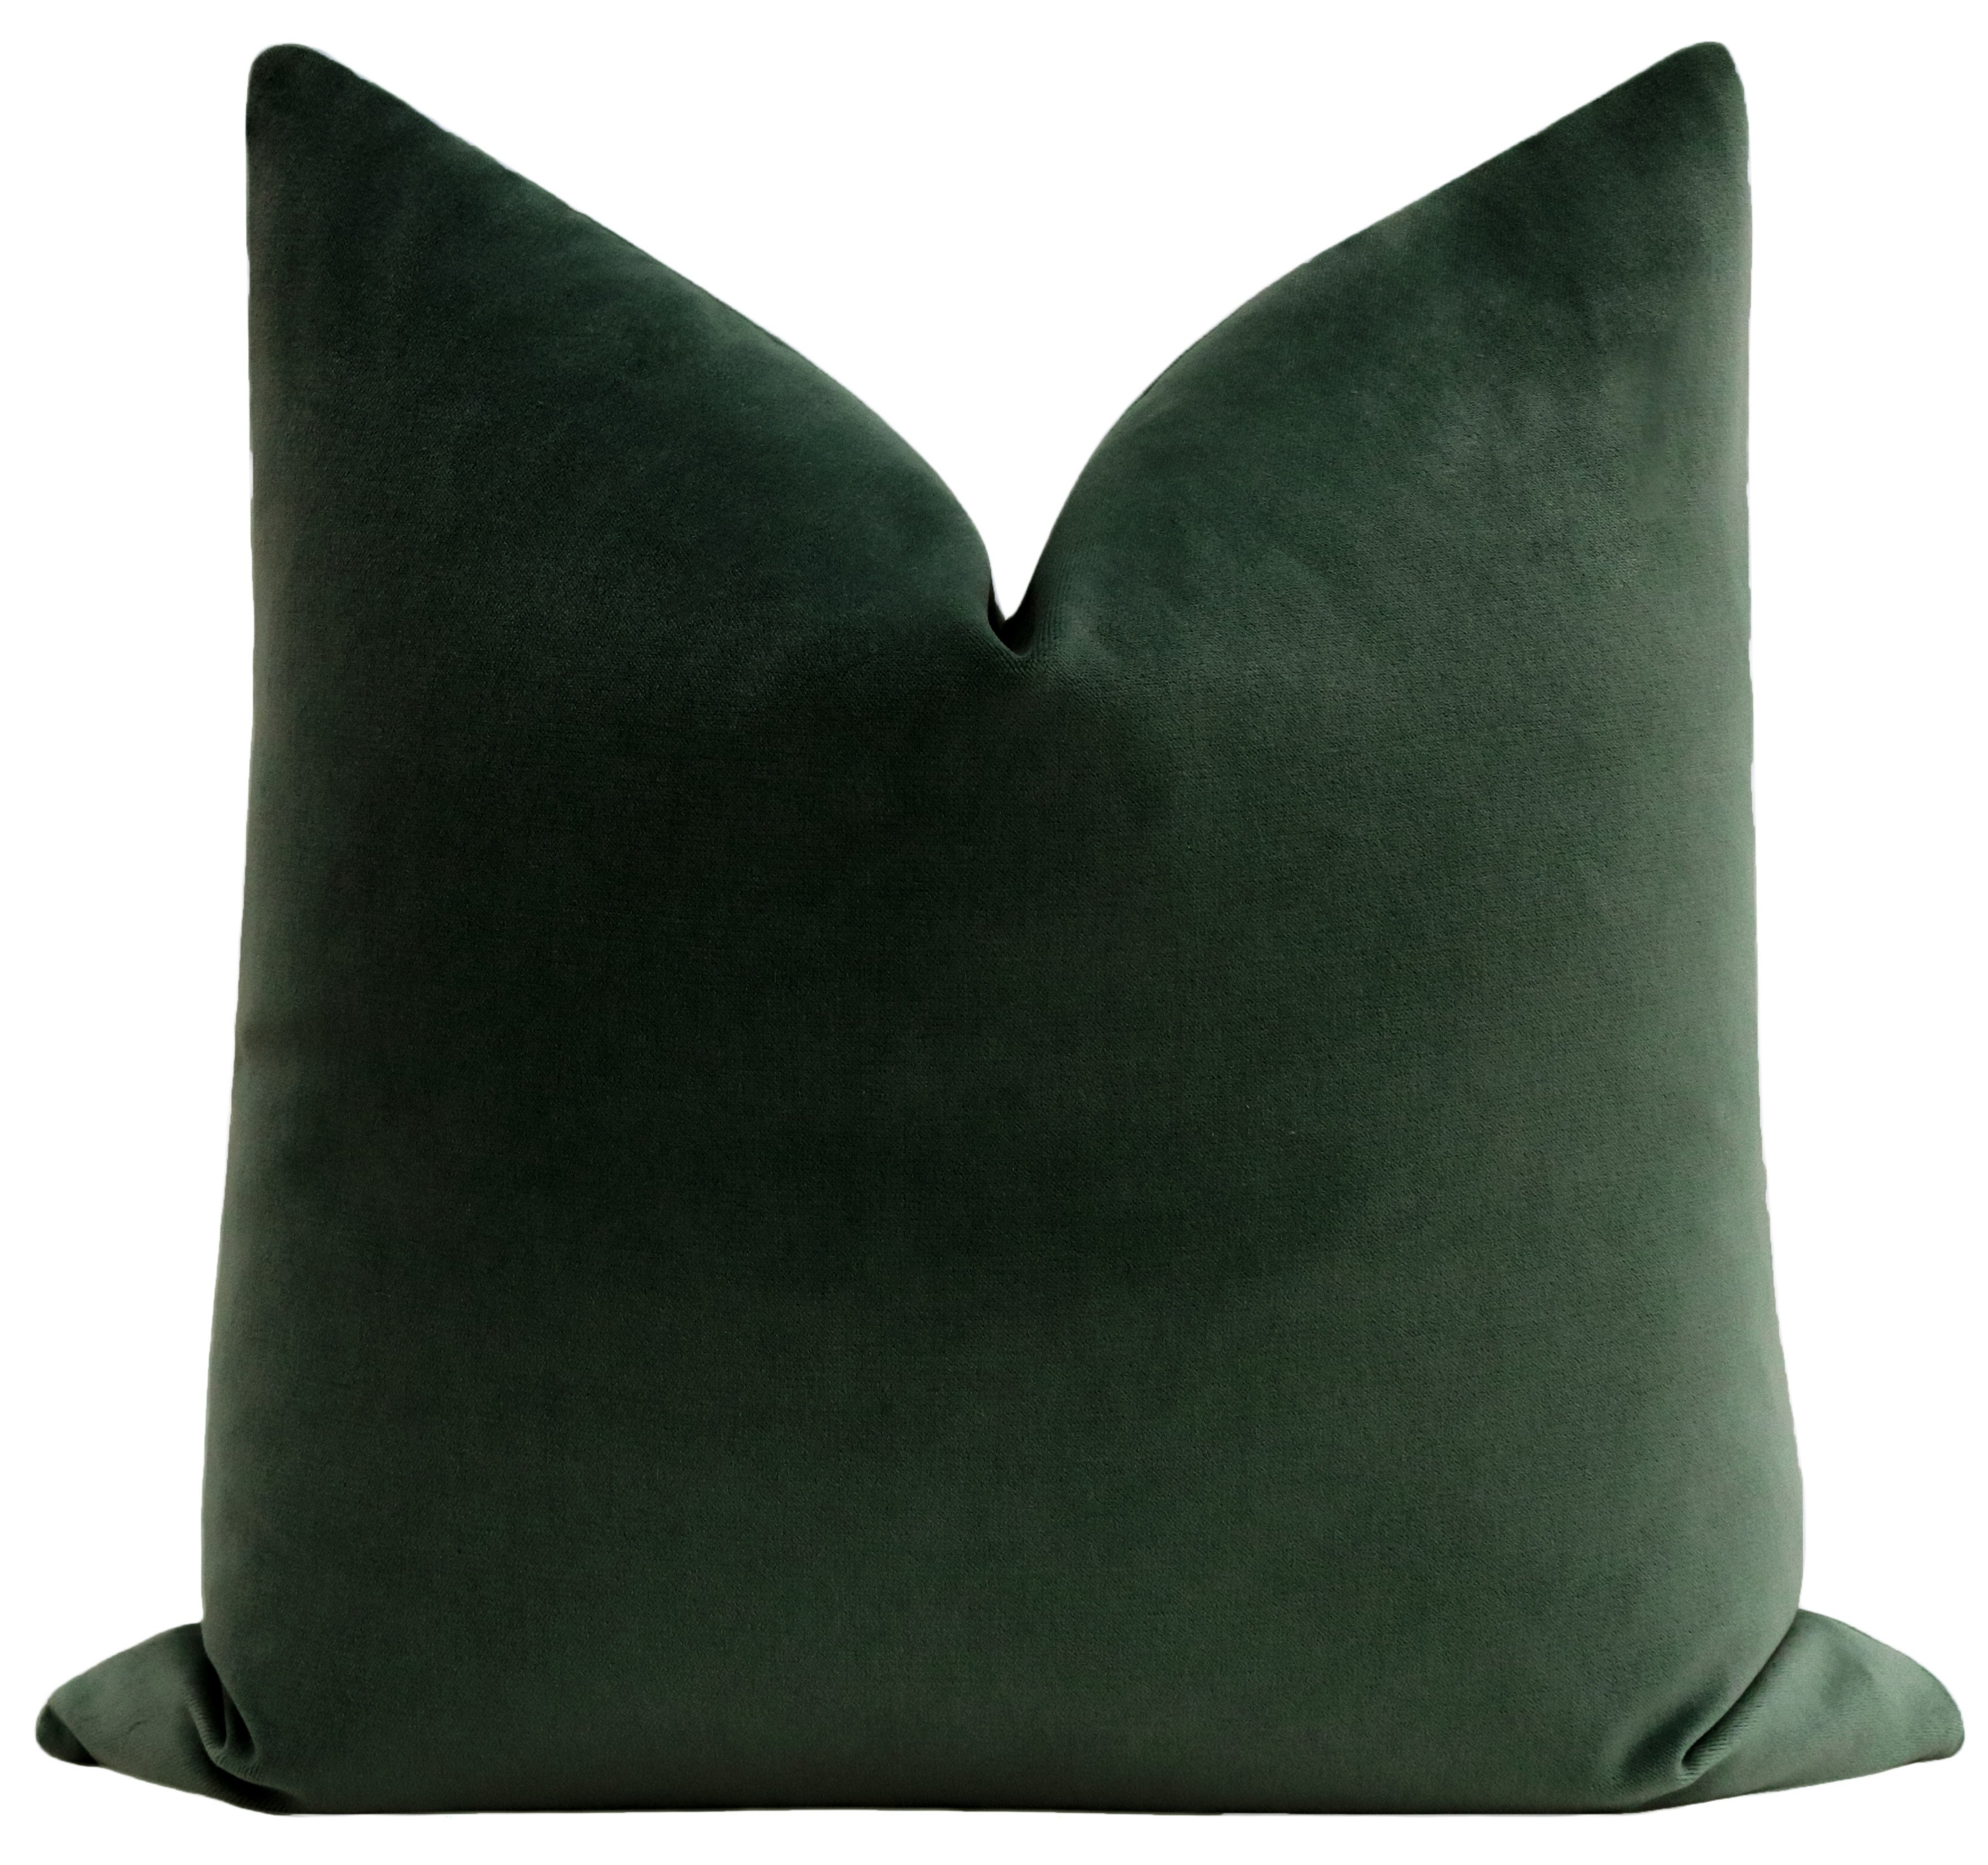 Society Velvet Pillow Cover, Emerald, 20" x 20" - Little Design Company